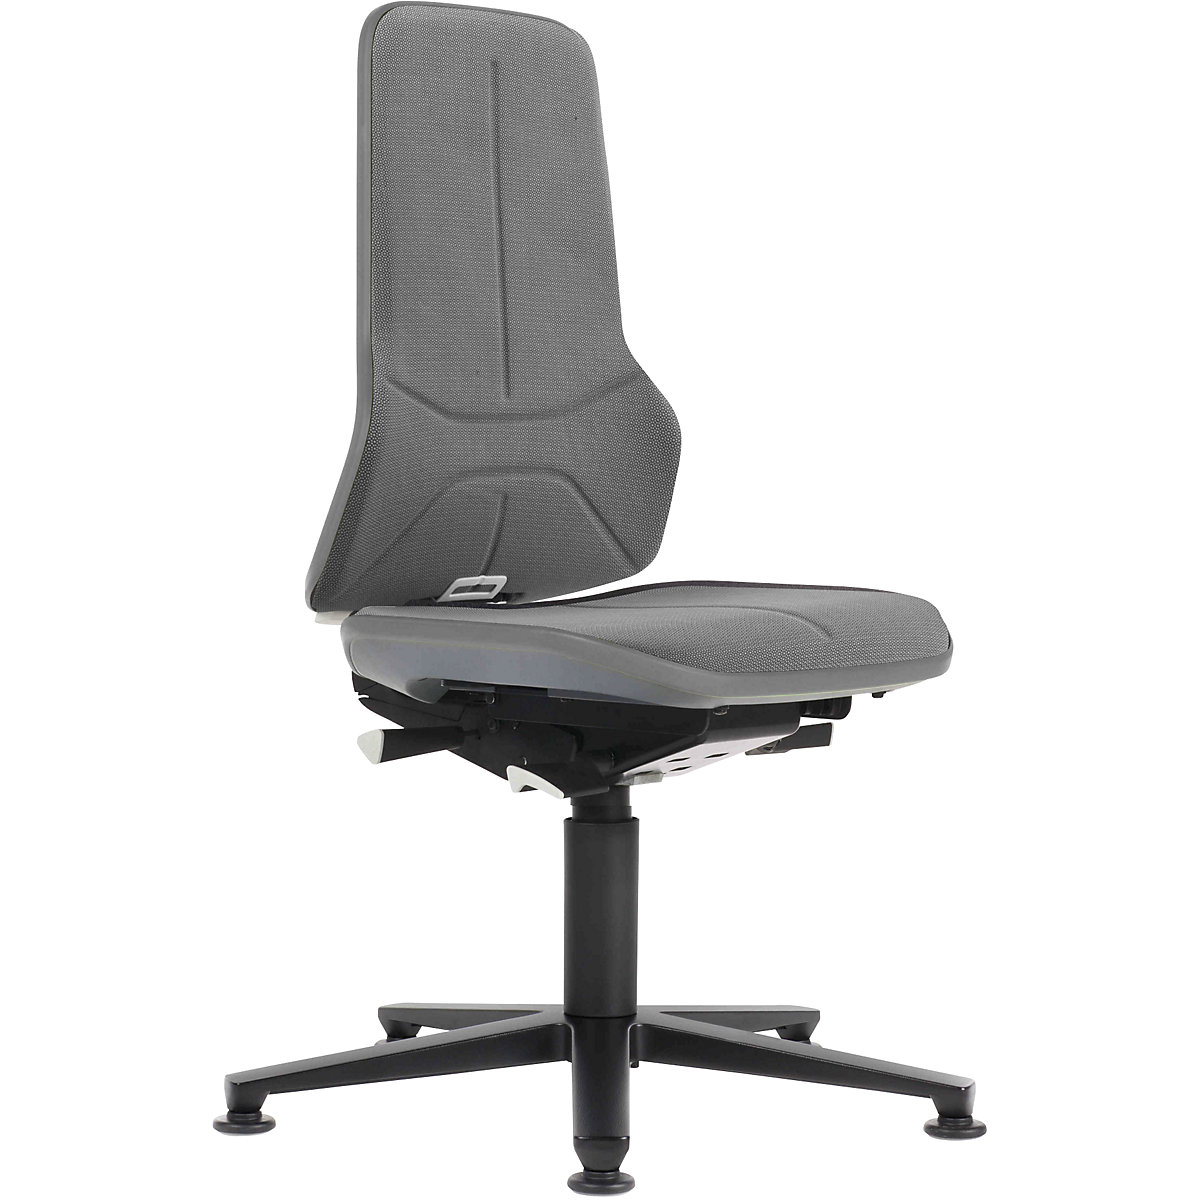 Pracovní otočná židle NEON, patky – bimos, permanentní kontakt, Supertec, šedý flexibilní pás-19